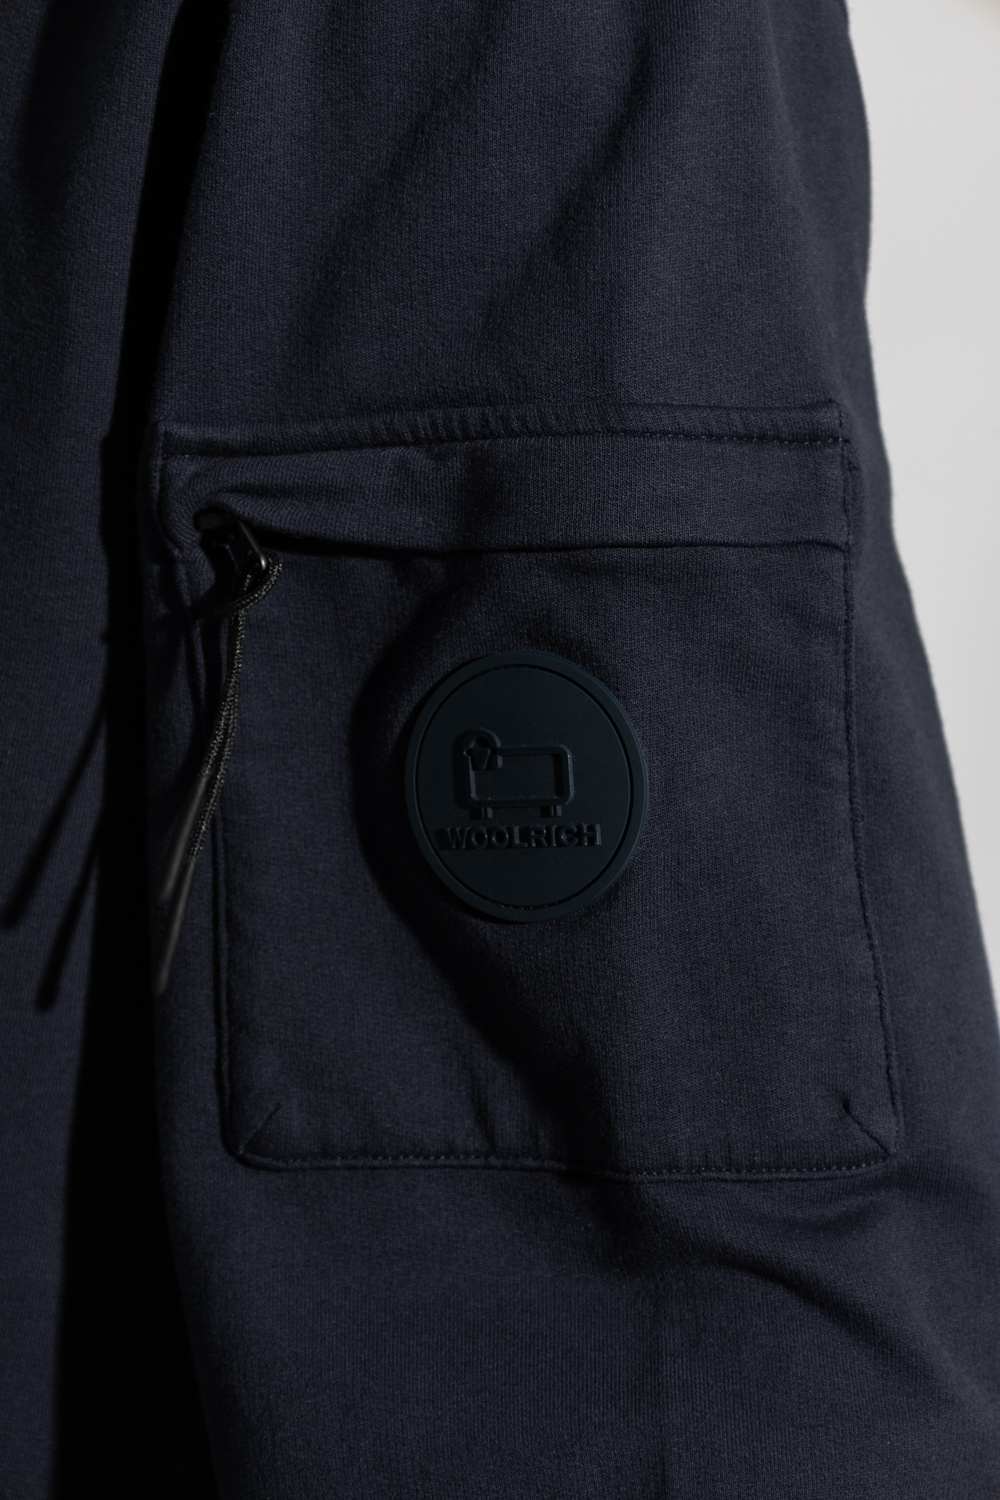 Woolrich Calvin Klein Jeans x Andy Warhol denim jacket